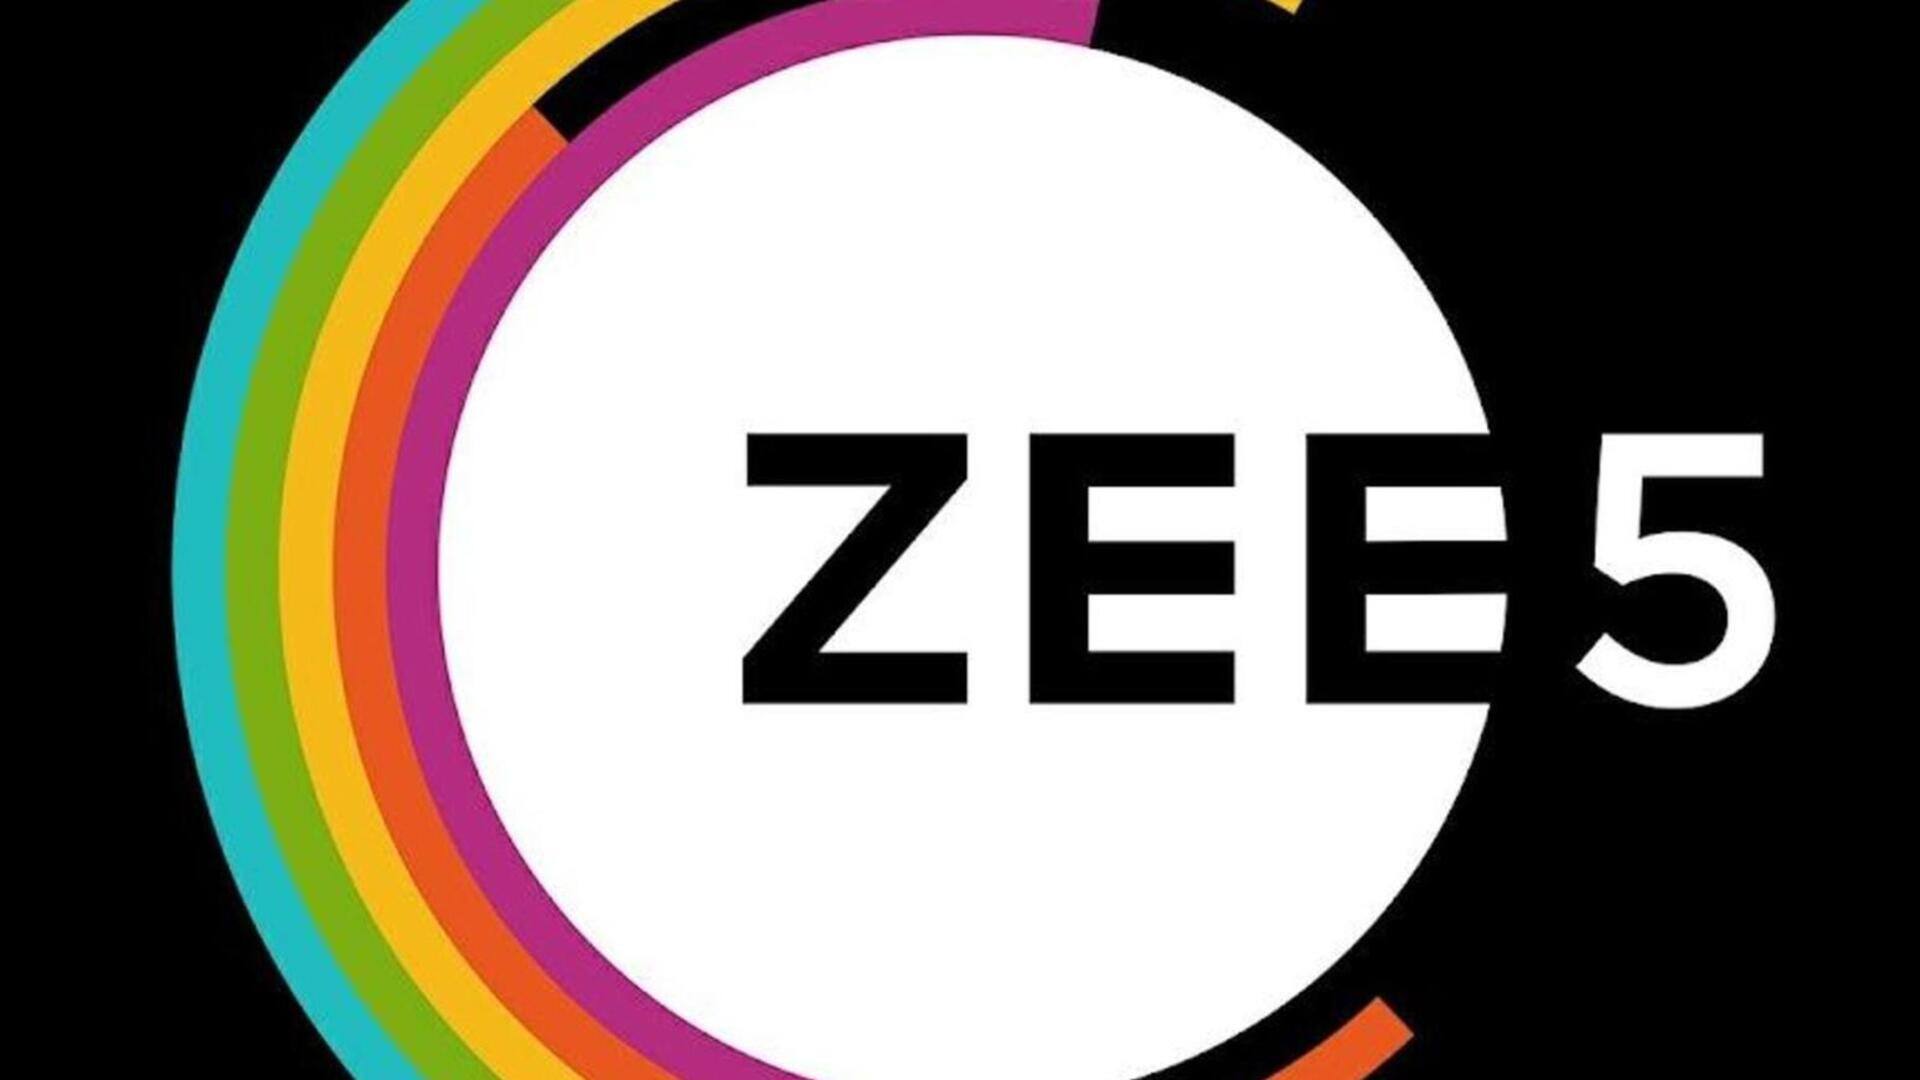 मुफ्त में पा सकते हैं ZEE5 सब्सक्रिप्शन, इन प्लेटफॉर्म्स पर उपलब्ध हैं ऑफर्स